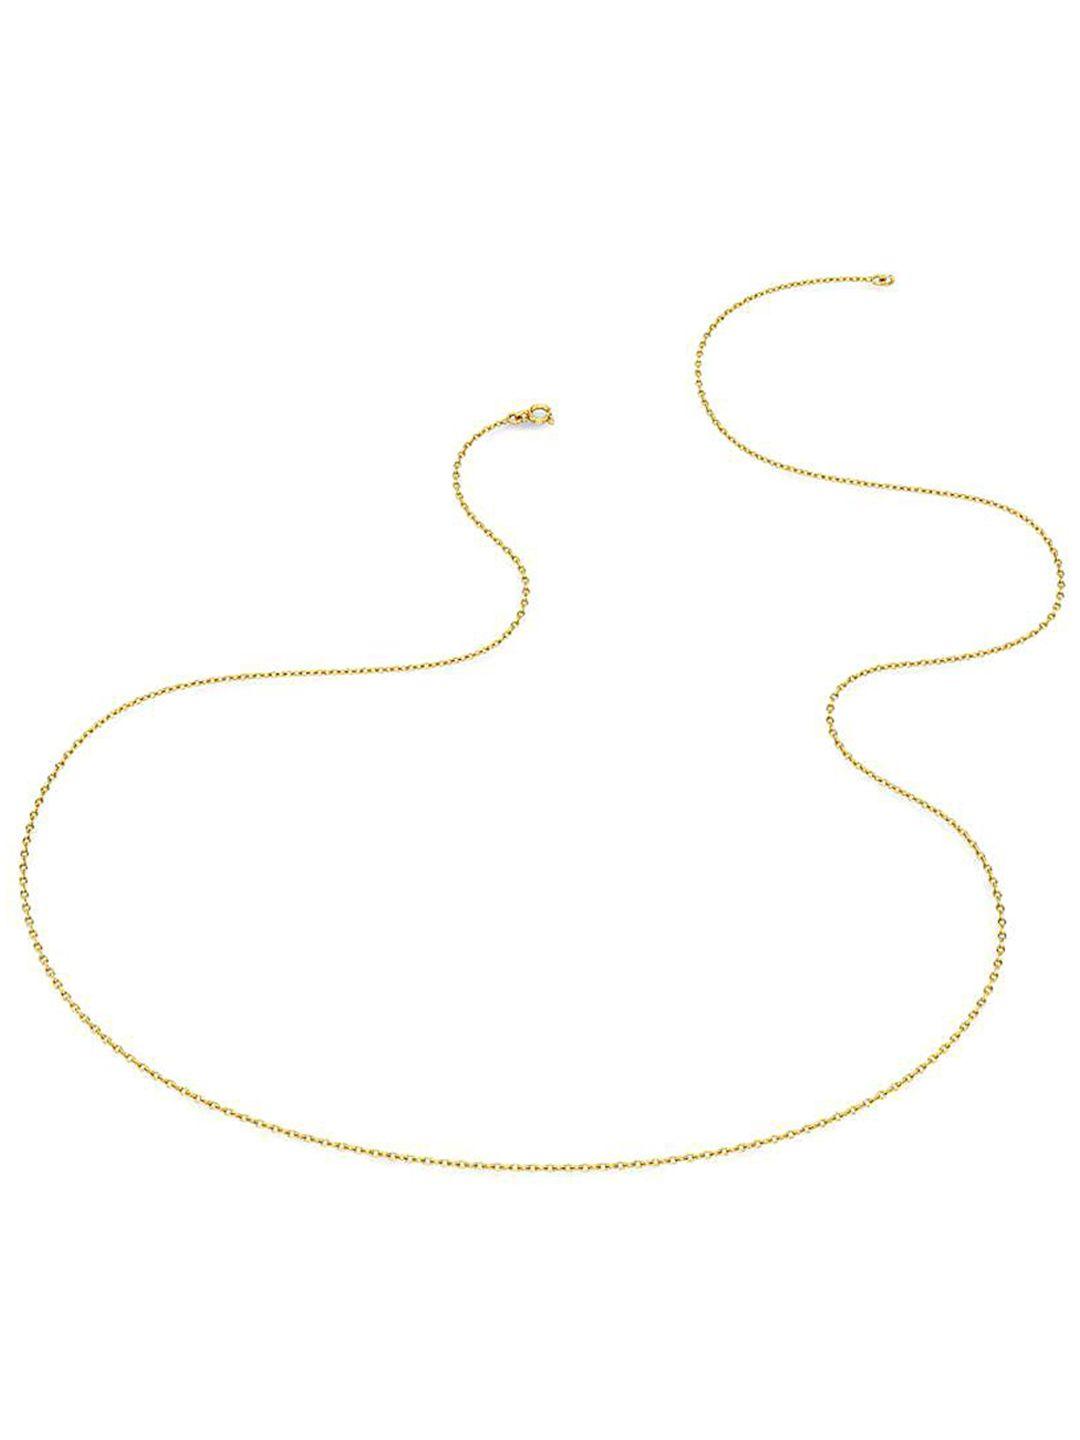 candere a kalyan jewellers company lightweight 18kt bis hallmark gold chain-2.09gm